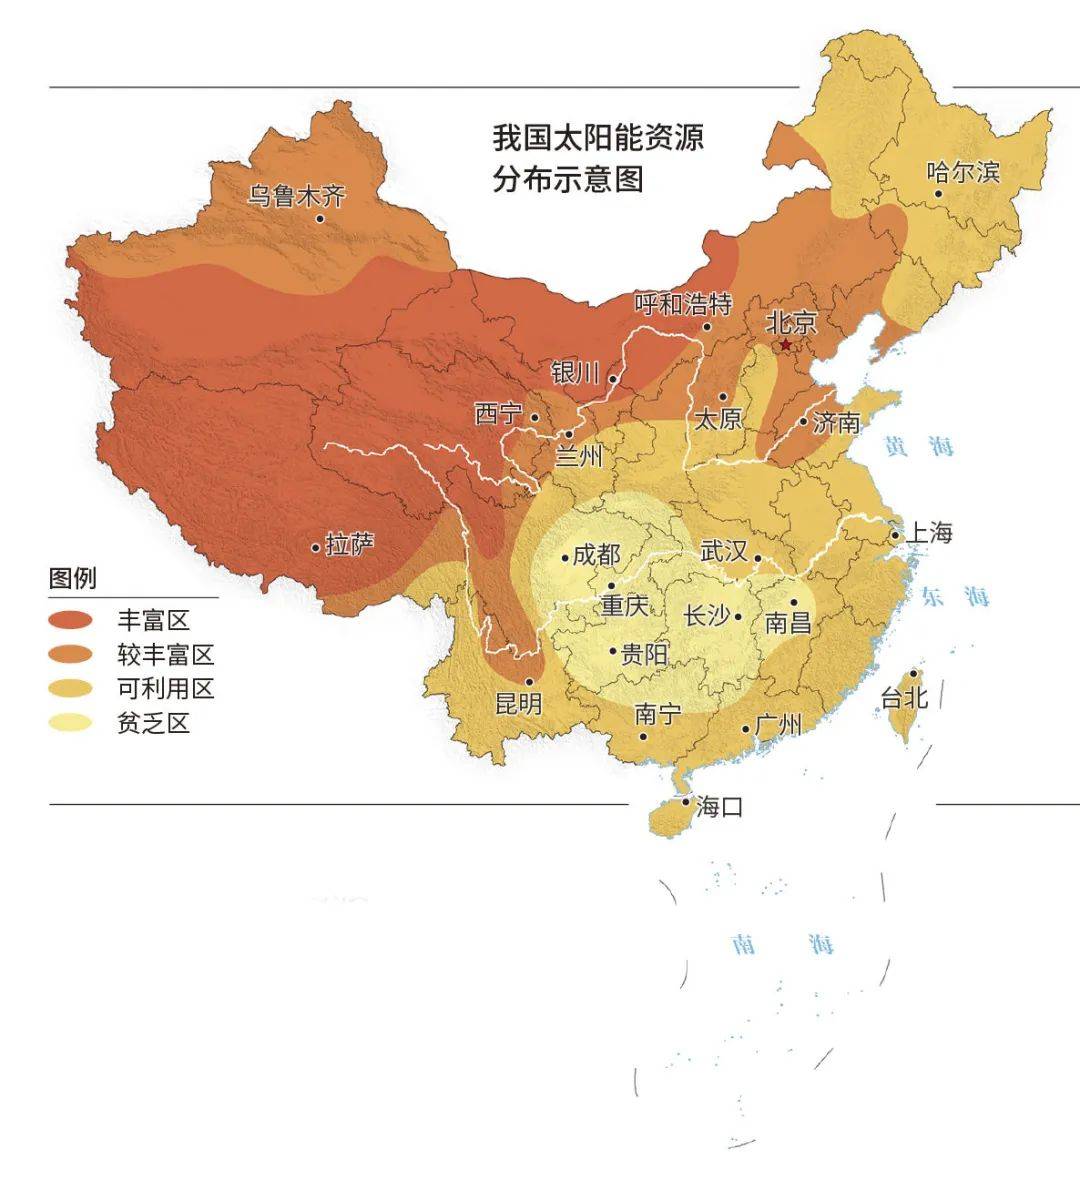 中国的新能源产业是如何分布的?